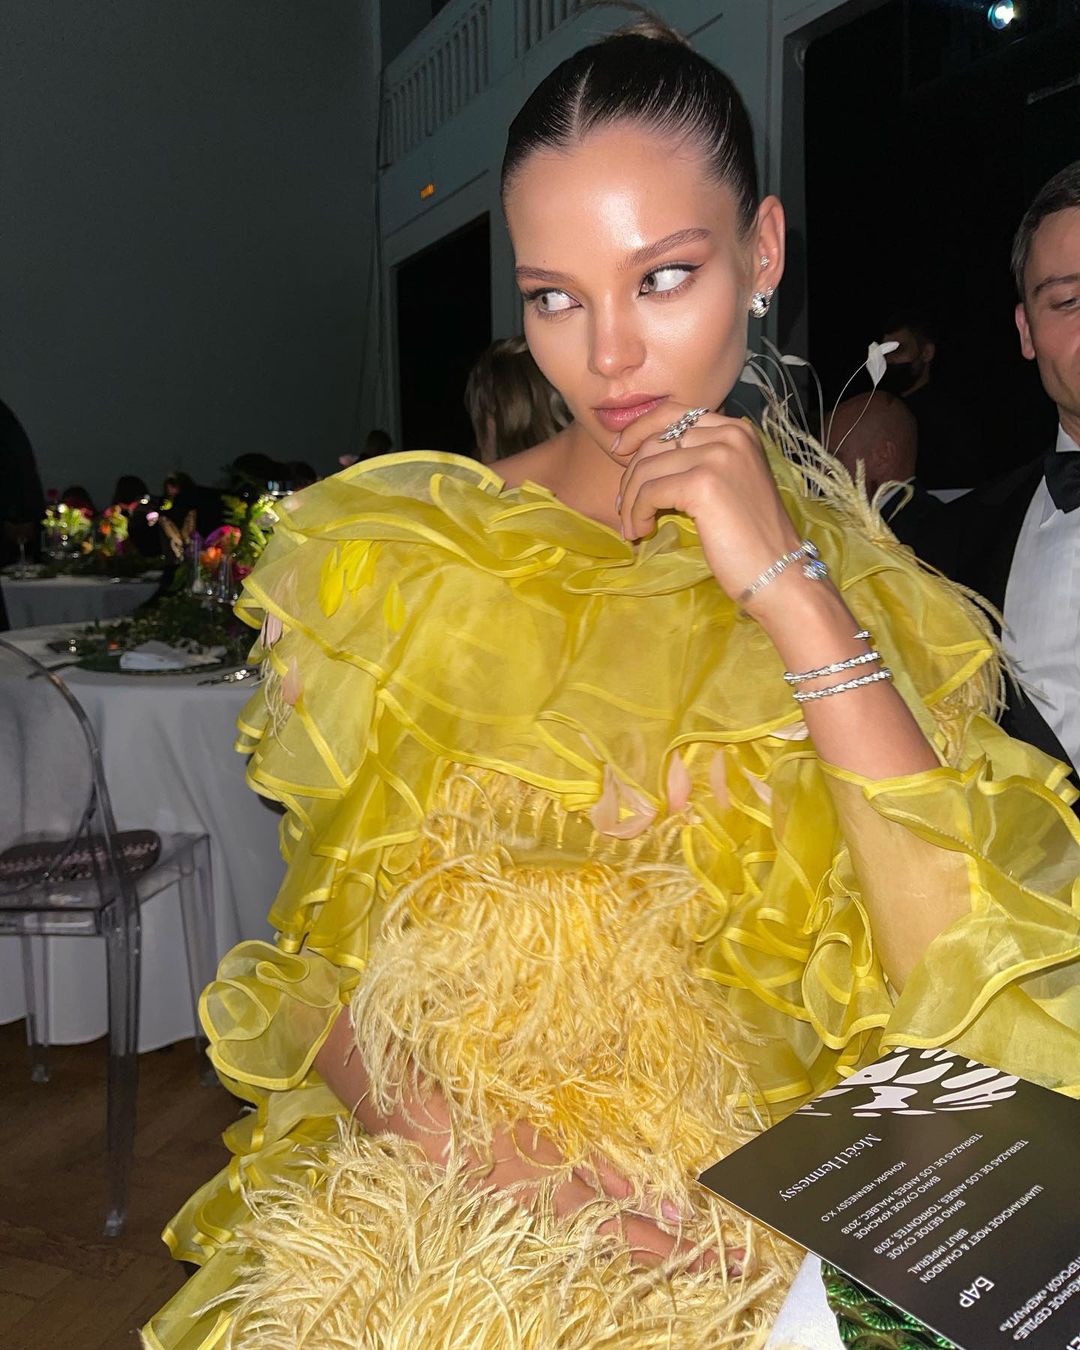 Леся Кафельникова появилась на мероприятии в "беременном" платье от Натальи Водяновой